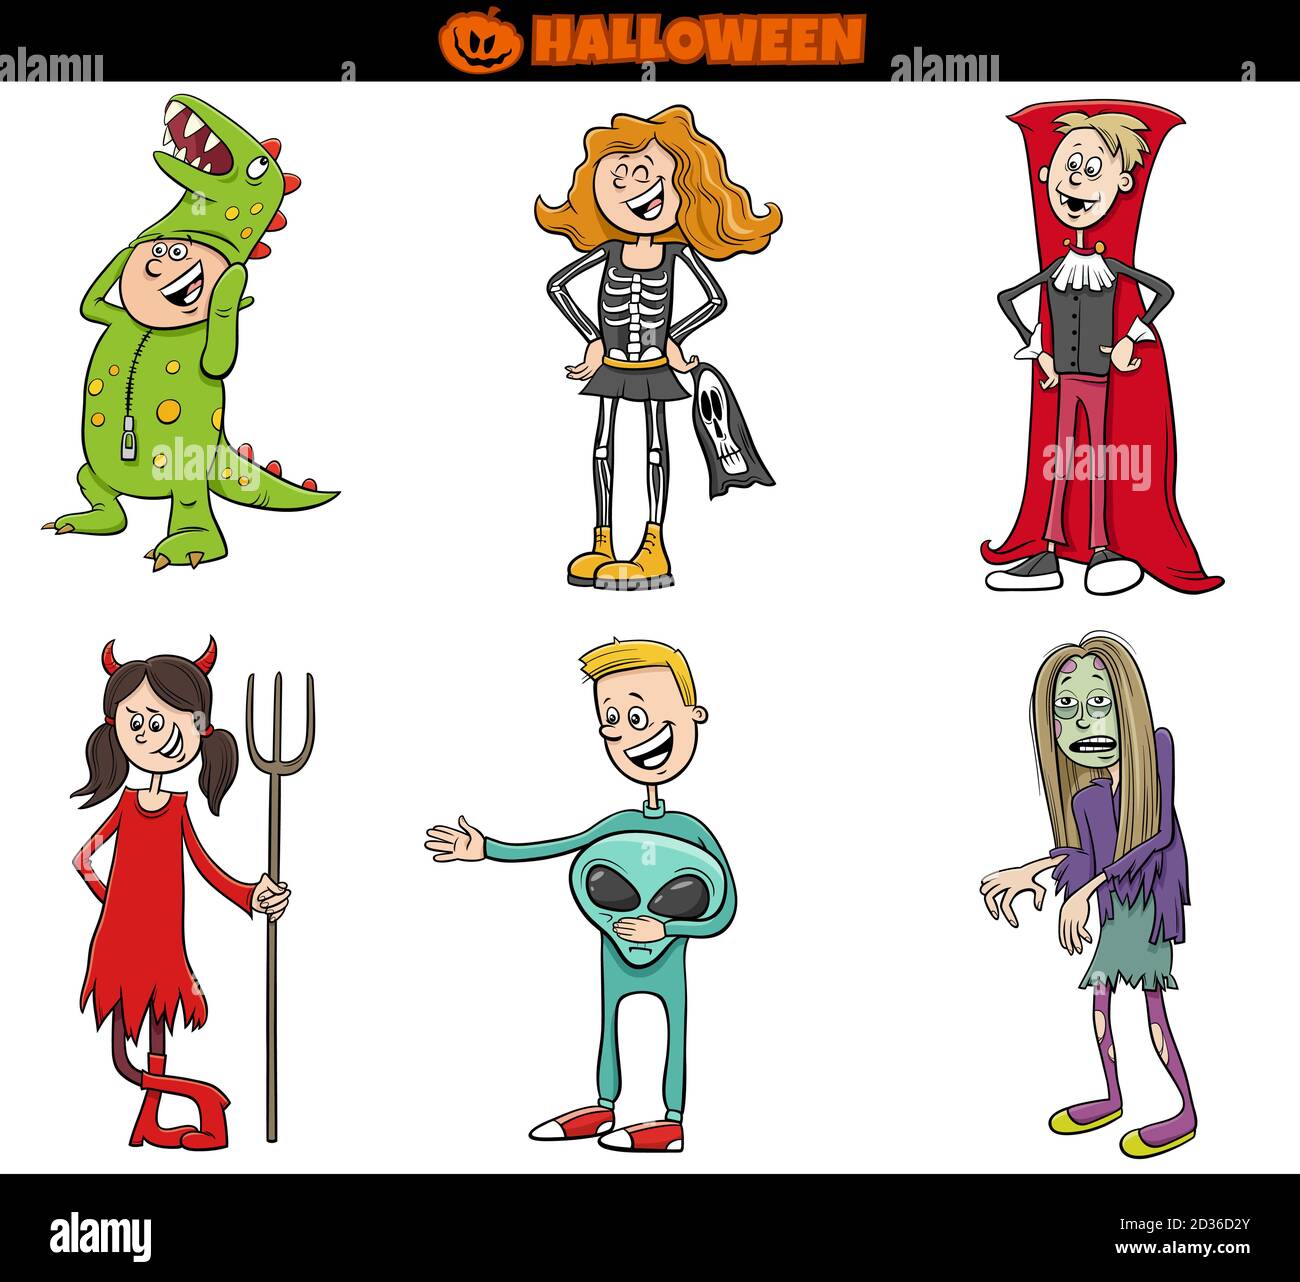 Illustrazione di Cartoon dei bambini e degli adolescenti in costumi ad Halloween Set da festa o da ballo mascherato Illustrazione Vettoriale